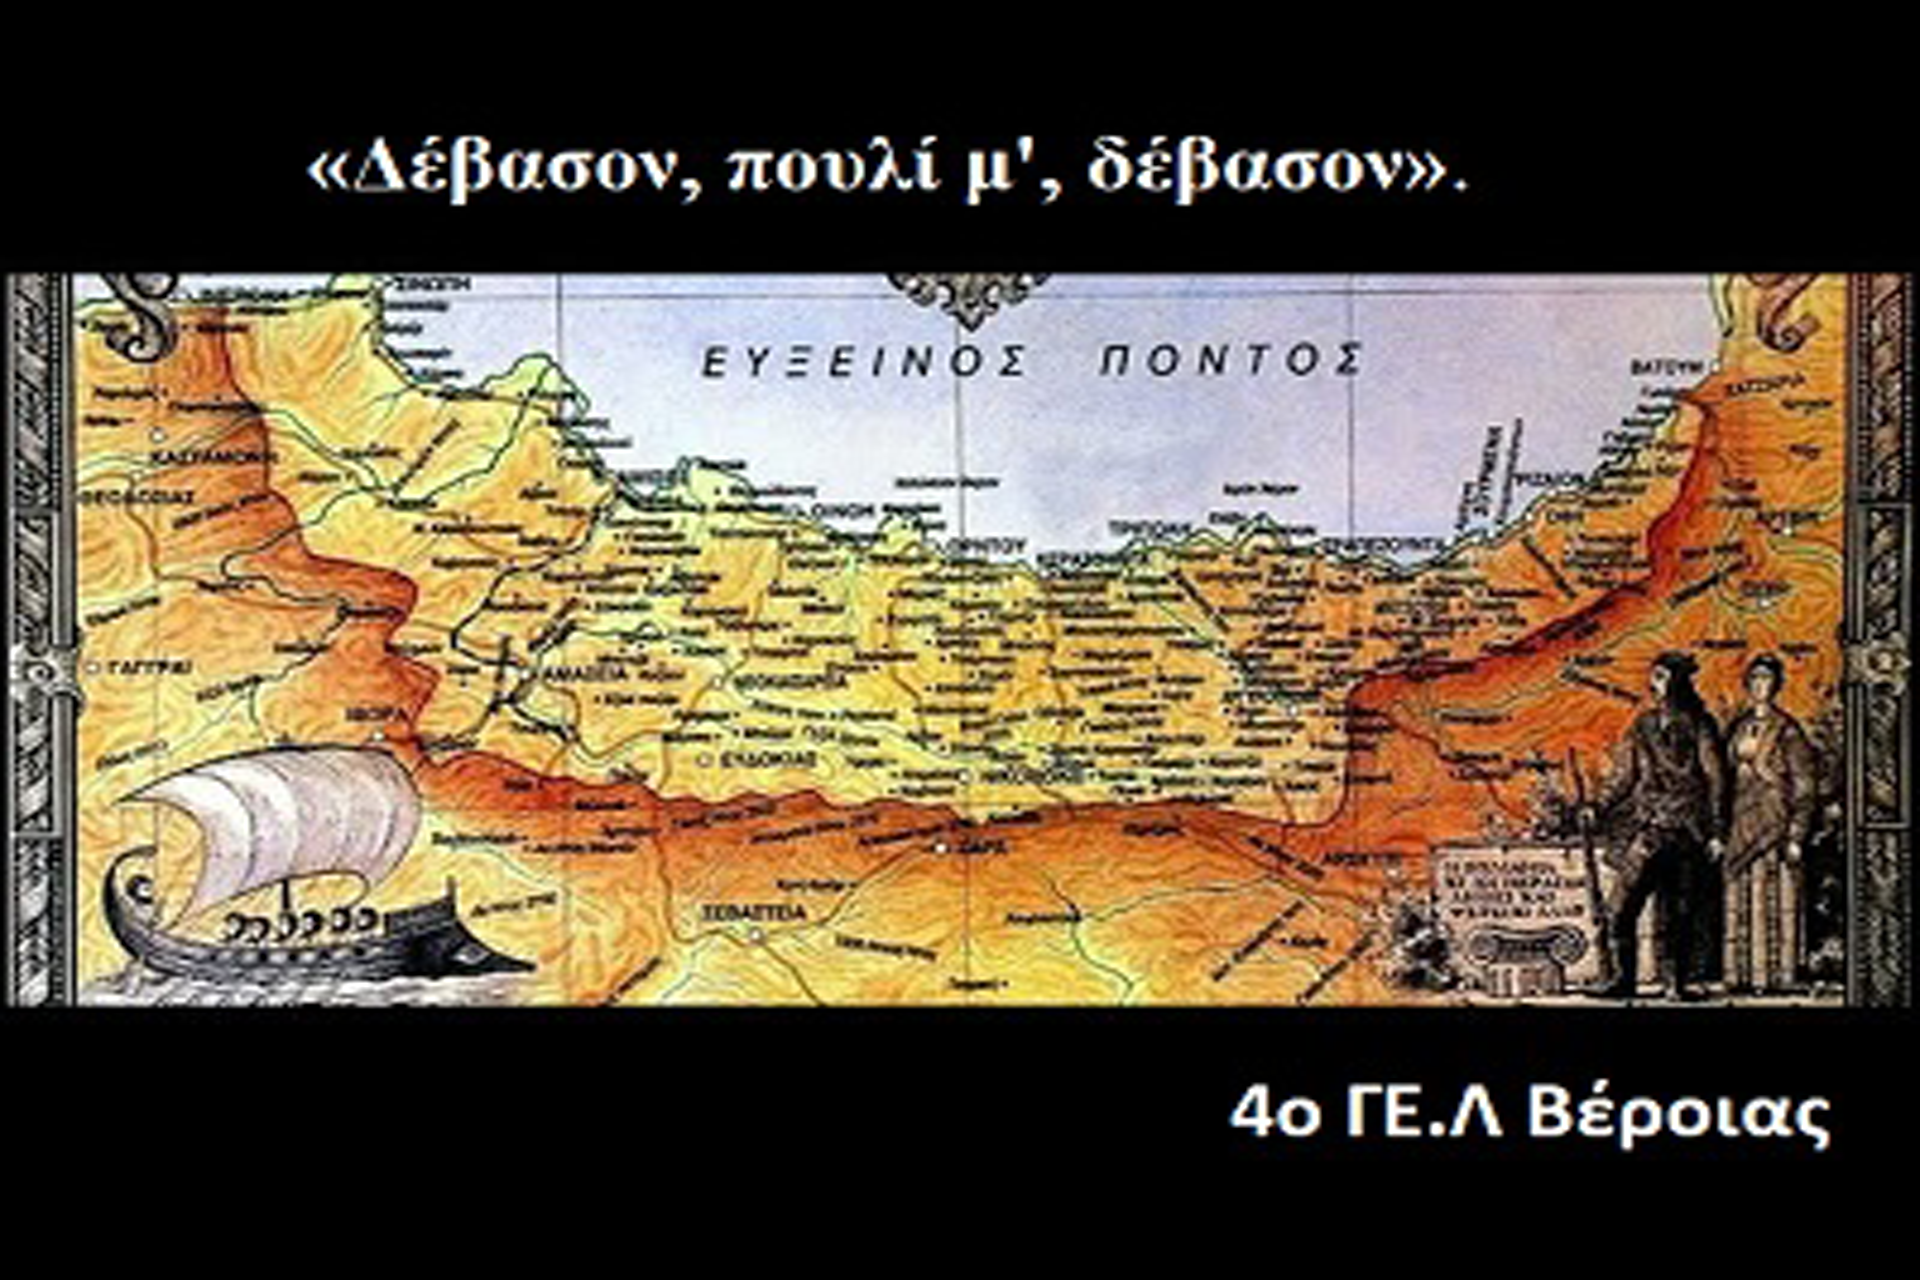 Διάκριση στον παγκόσμιο μαθητικό διαγωνισμό για τον ελληνισμό της Ανατολής: Πόντος, Μικρασία, Θράκη….